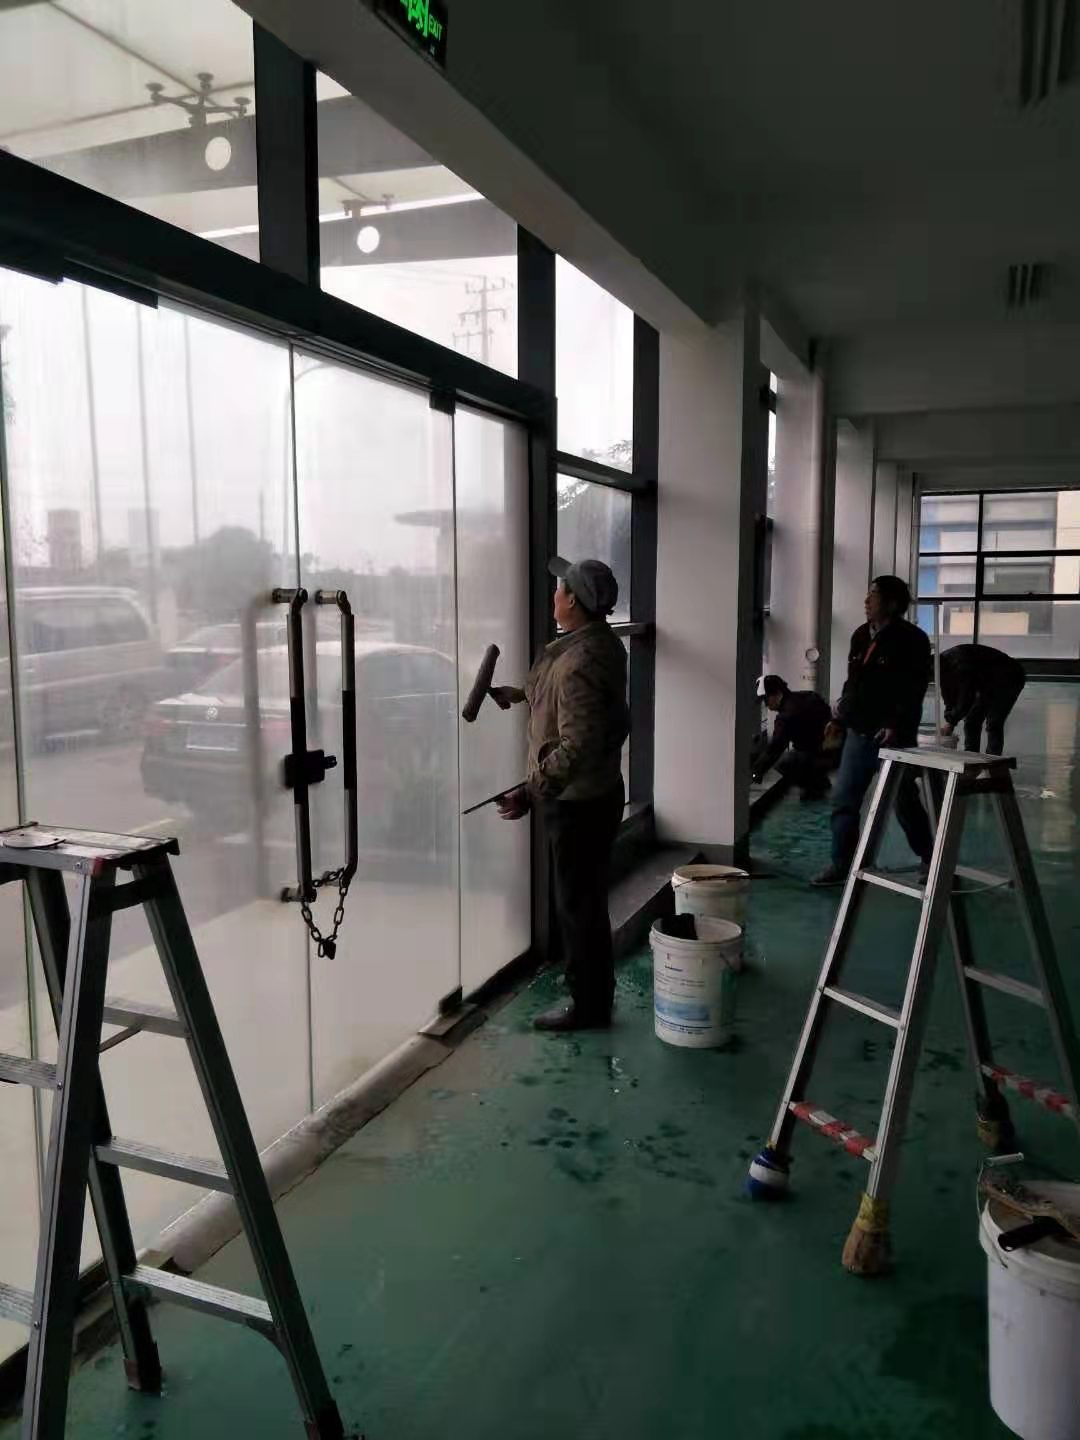 上海保洁公司「上海沪家保洁服务供应」 - 全球五金网